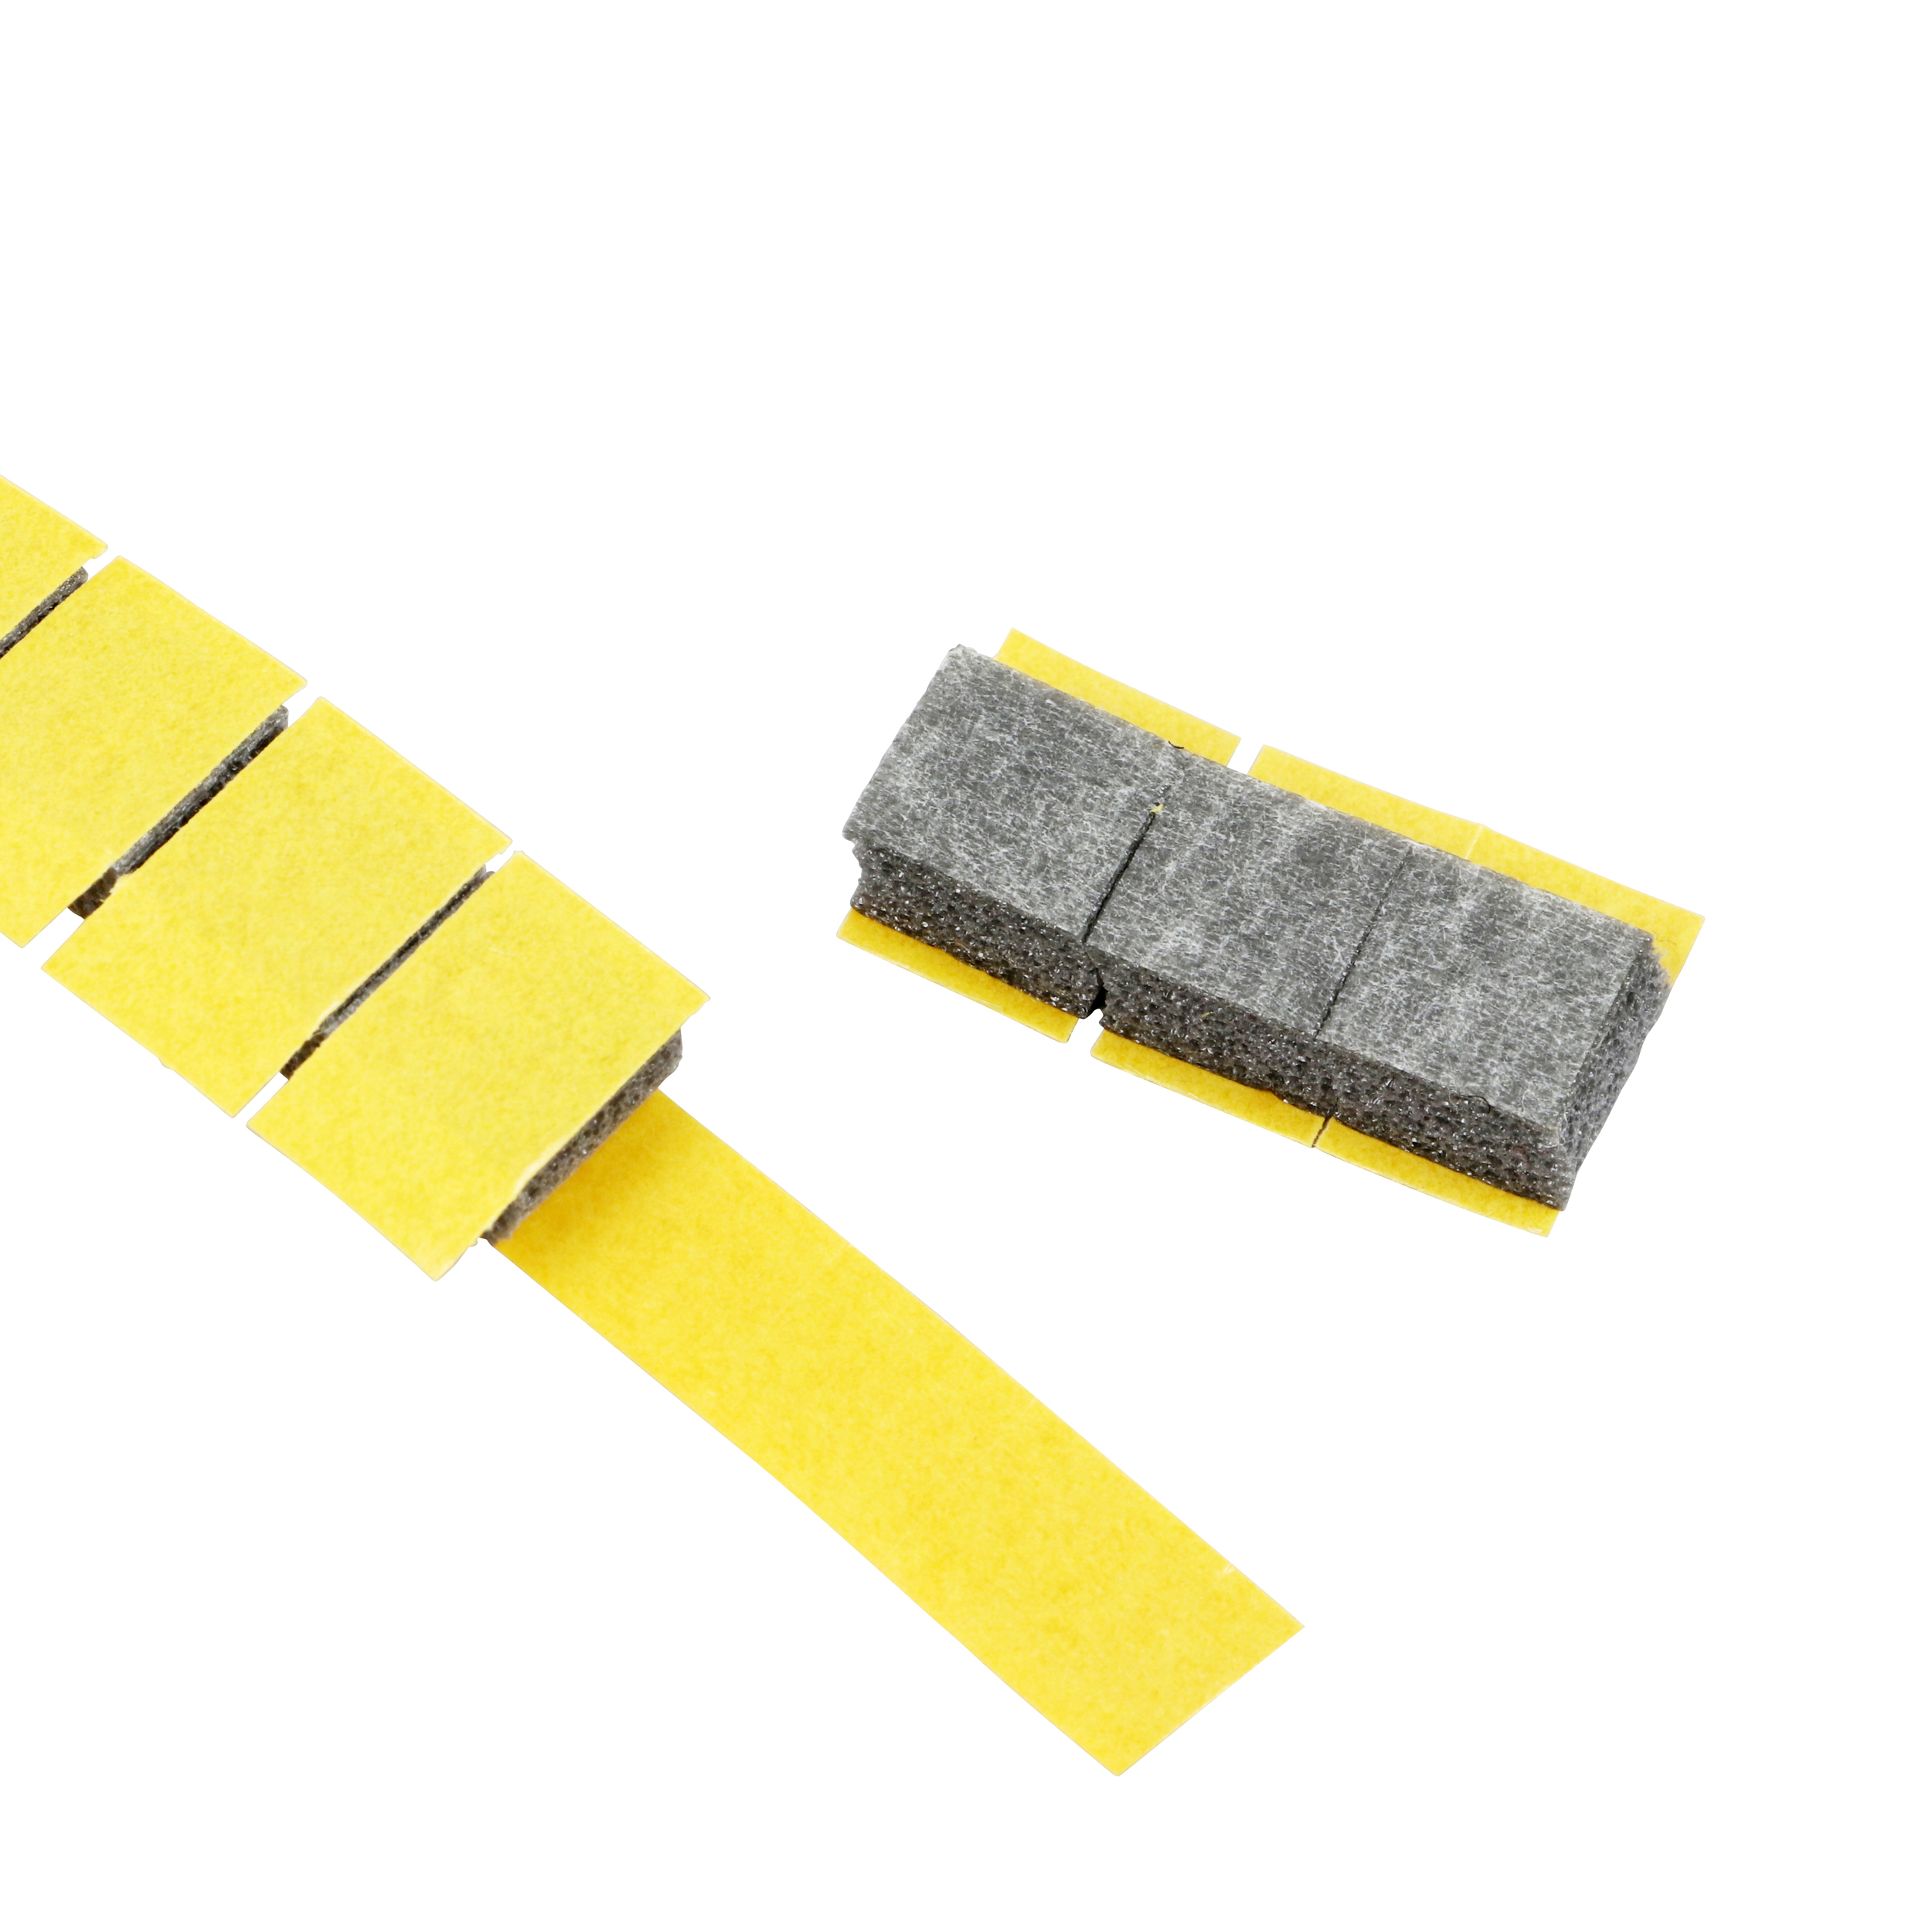 Klebepads doppelseitig aus Schaumstoff, 10 x 10 x 6 mm (Rolle mit